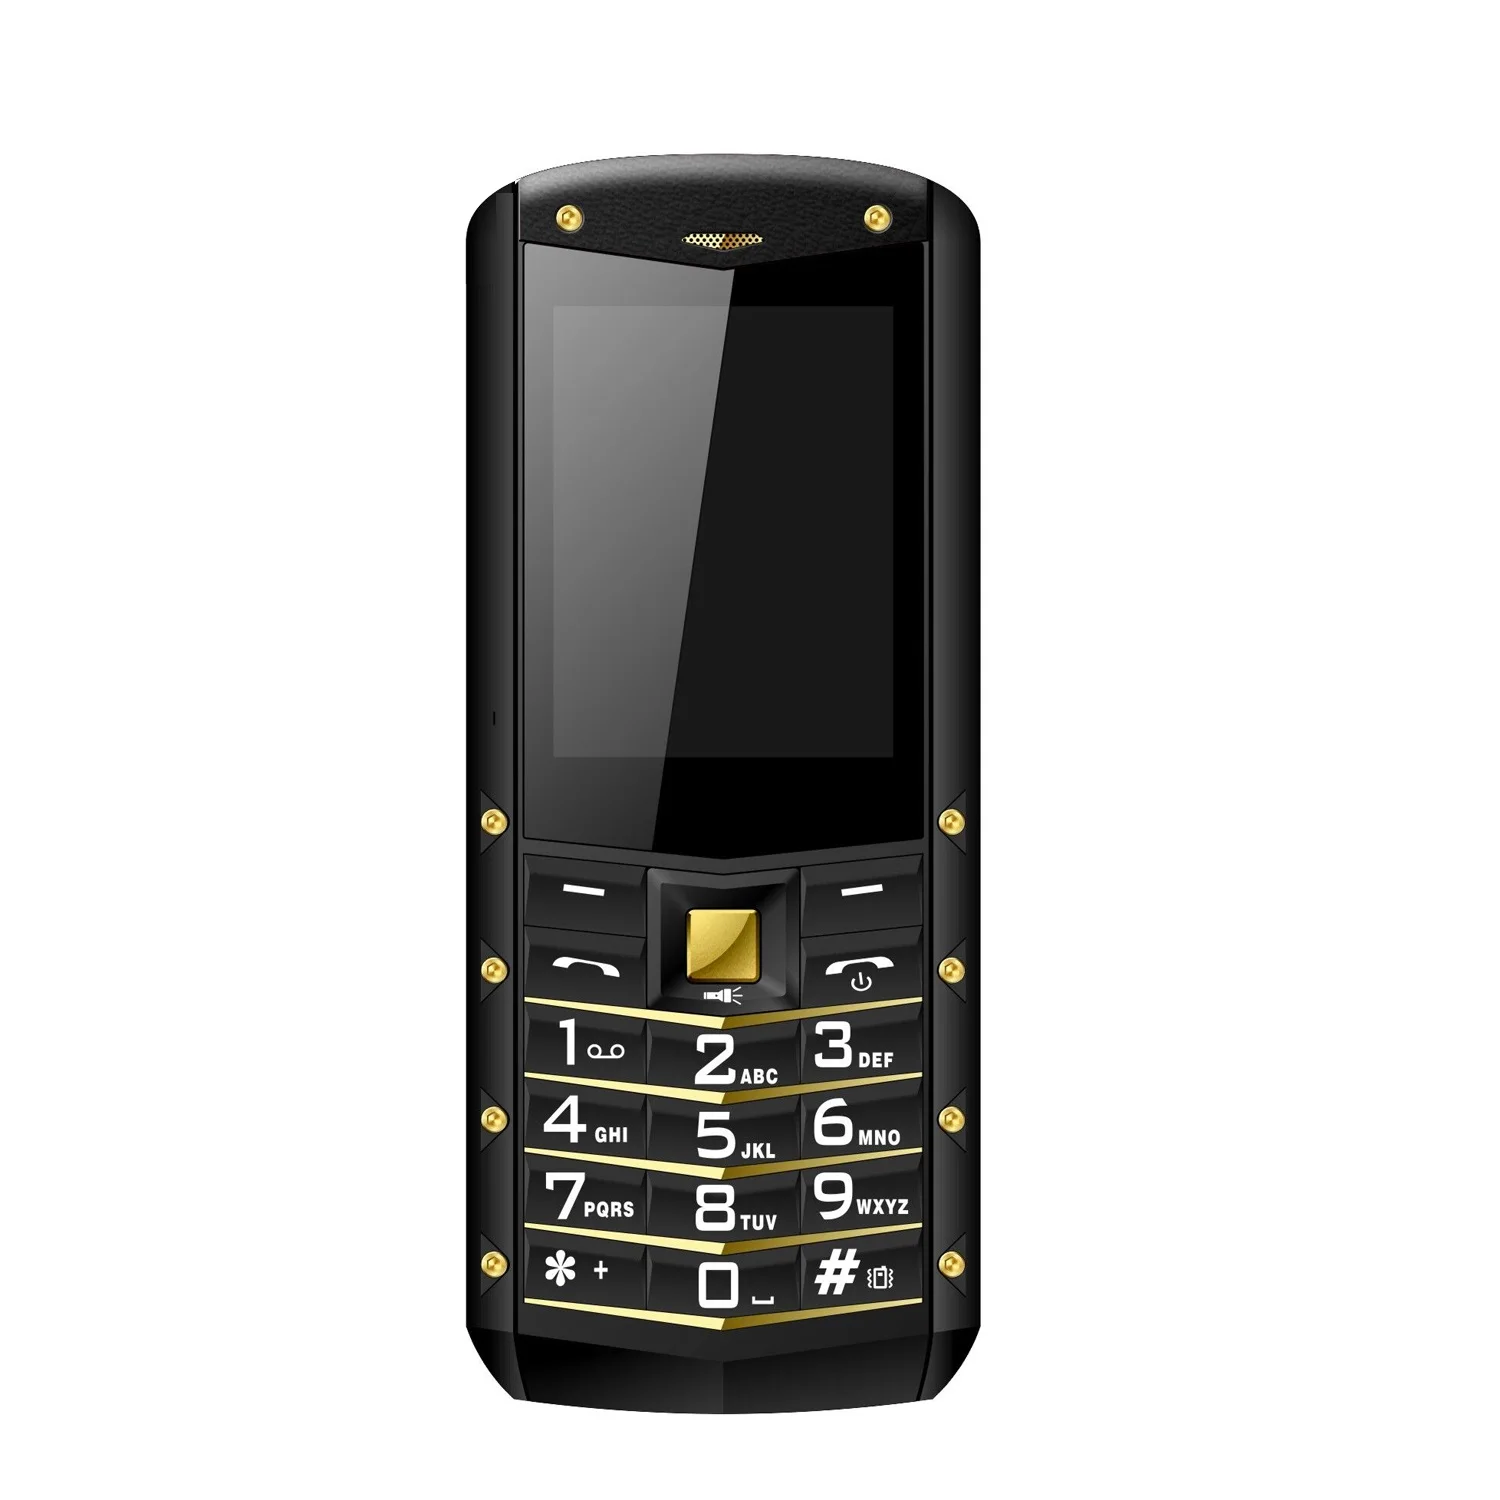 AGM M2 IP68 Водонепроницаемый телефона 2,4 дюйма Телефон Бар Dual SIM карты Bluetooth 1970 mAh FM 32 Мб Оперативная память 32 Мб Встроенная память клавиатура 2G GSM телефон